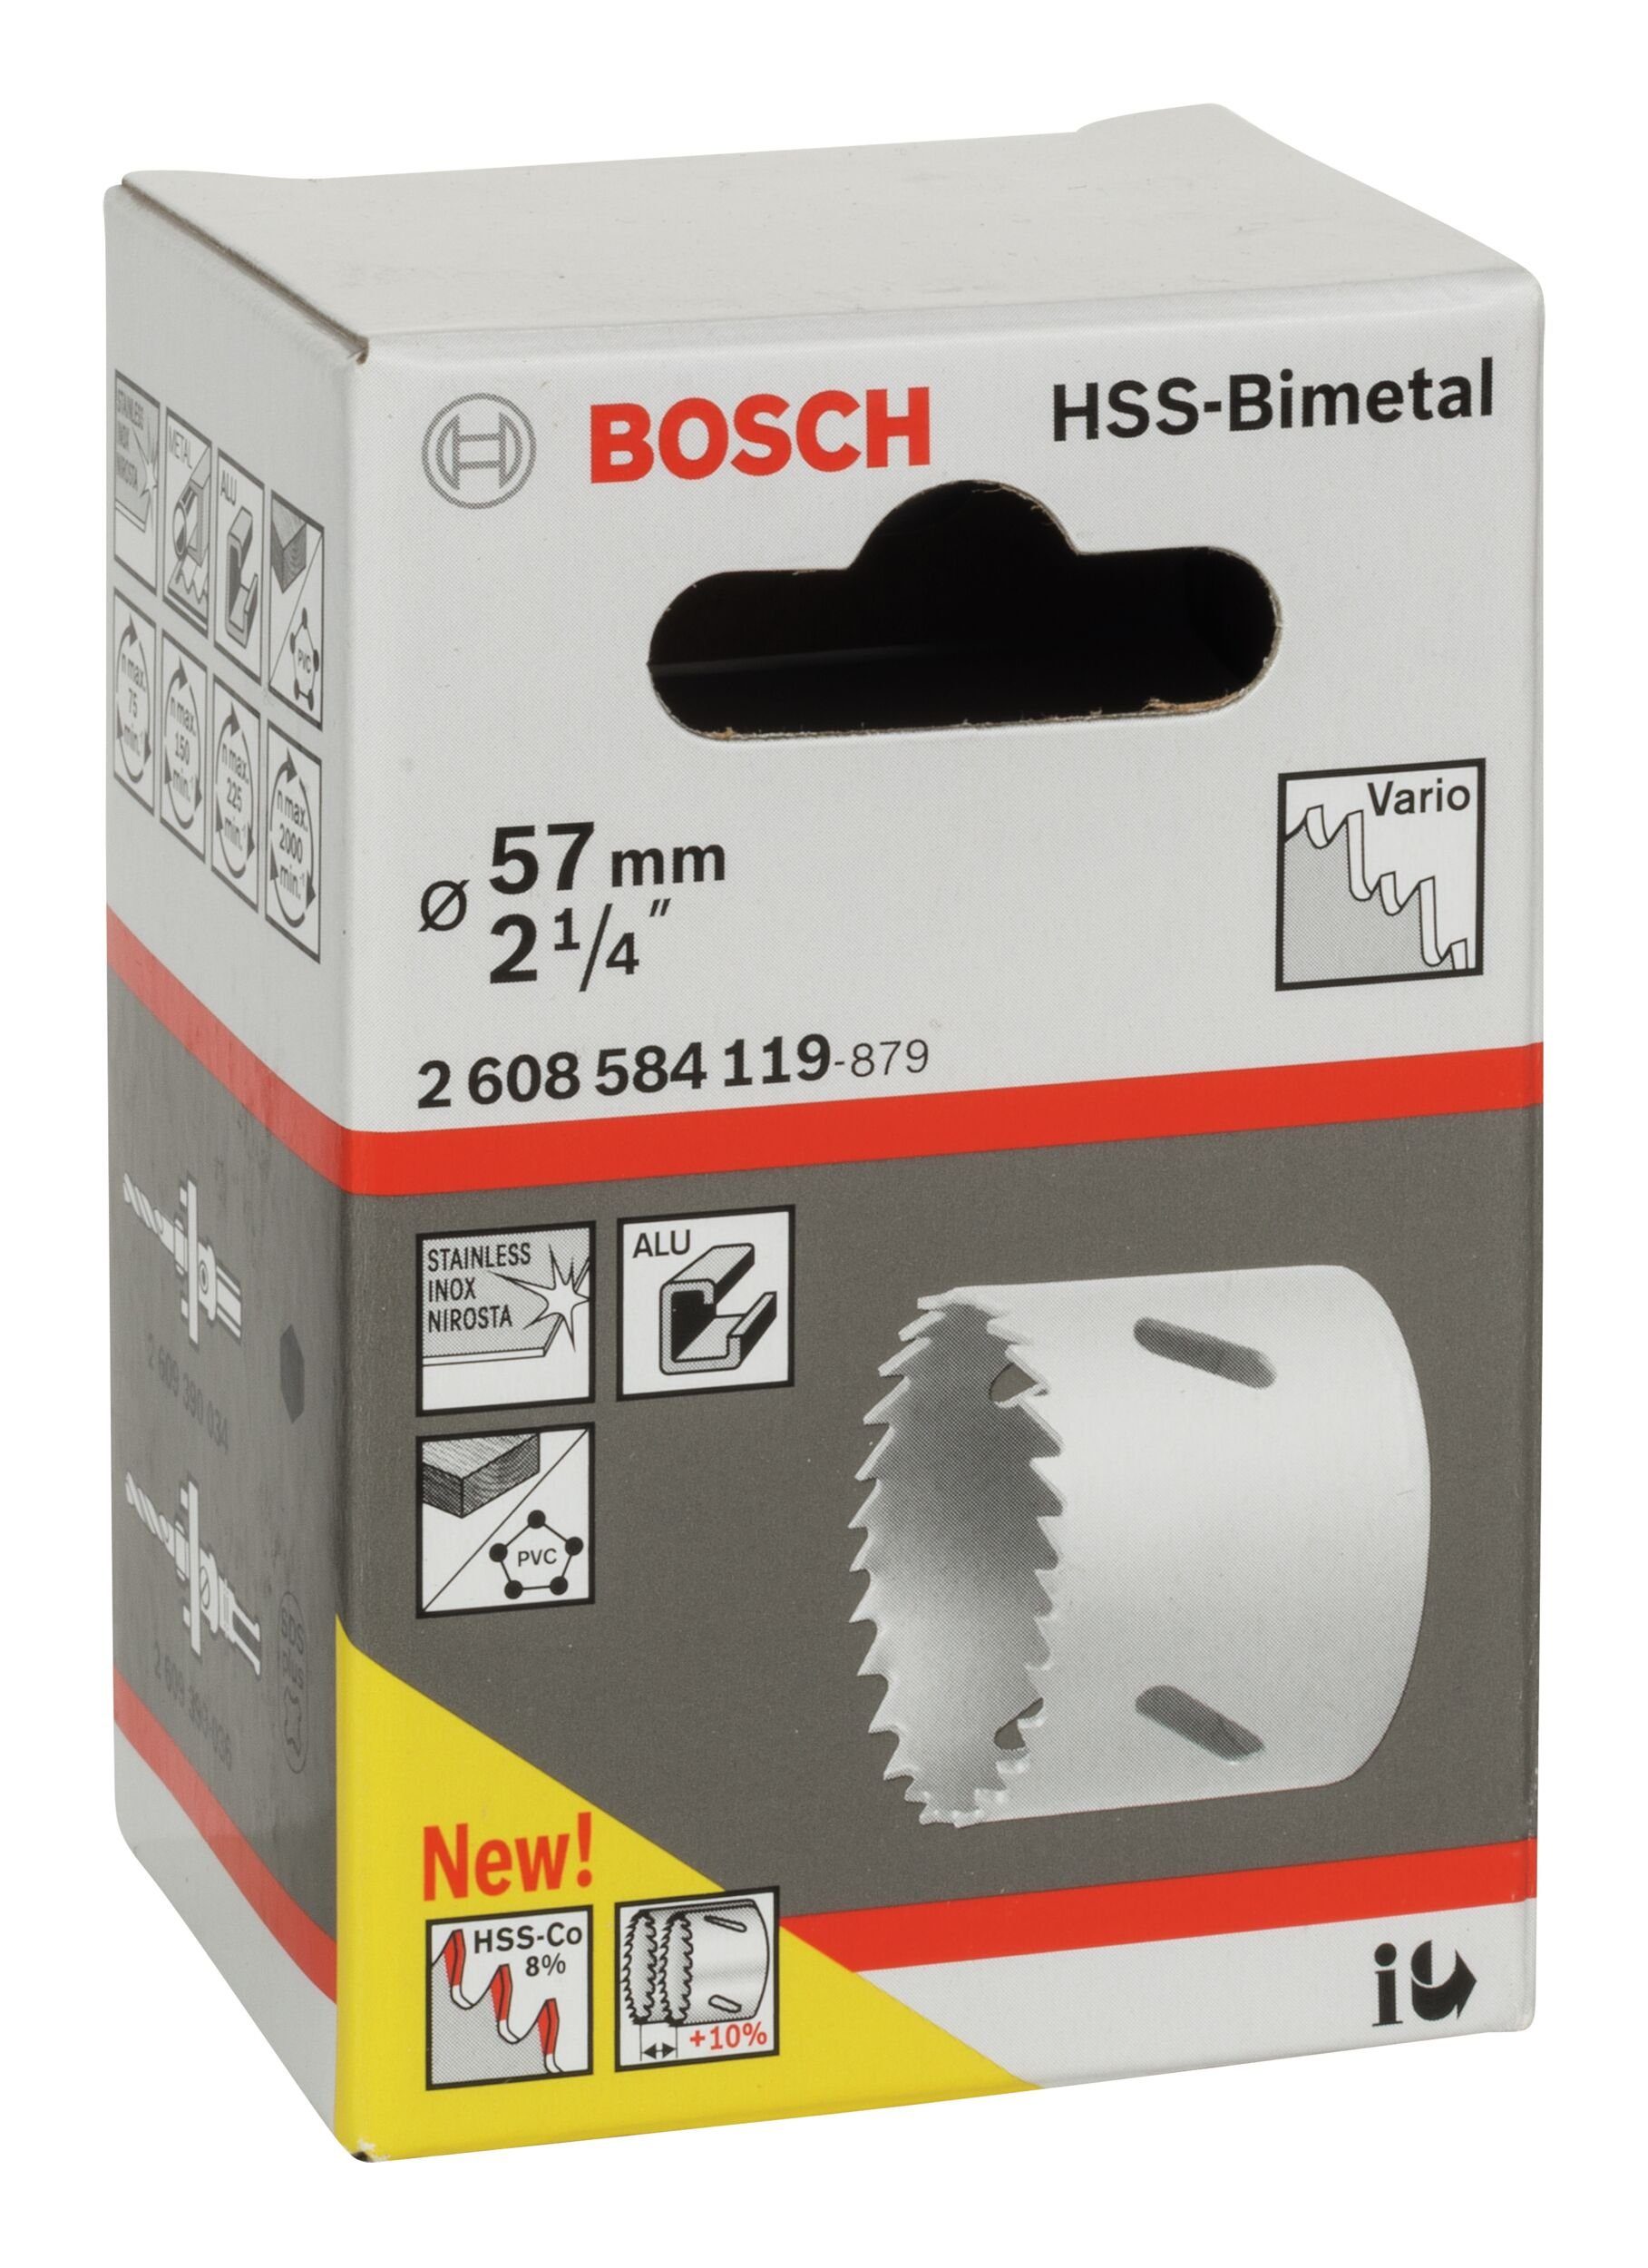 / - HSS-Bimetall 2 1/4" 57 Ø Lochsäge, mm, BOSCH für Standardadapter